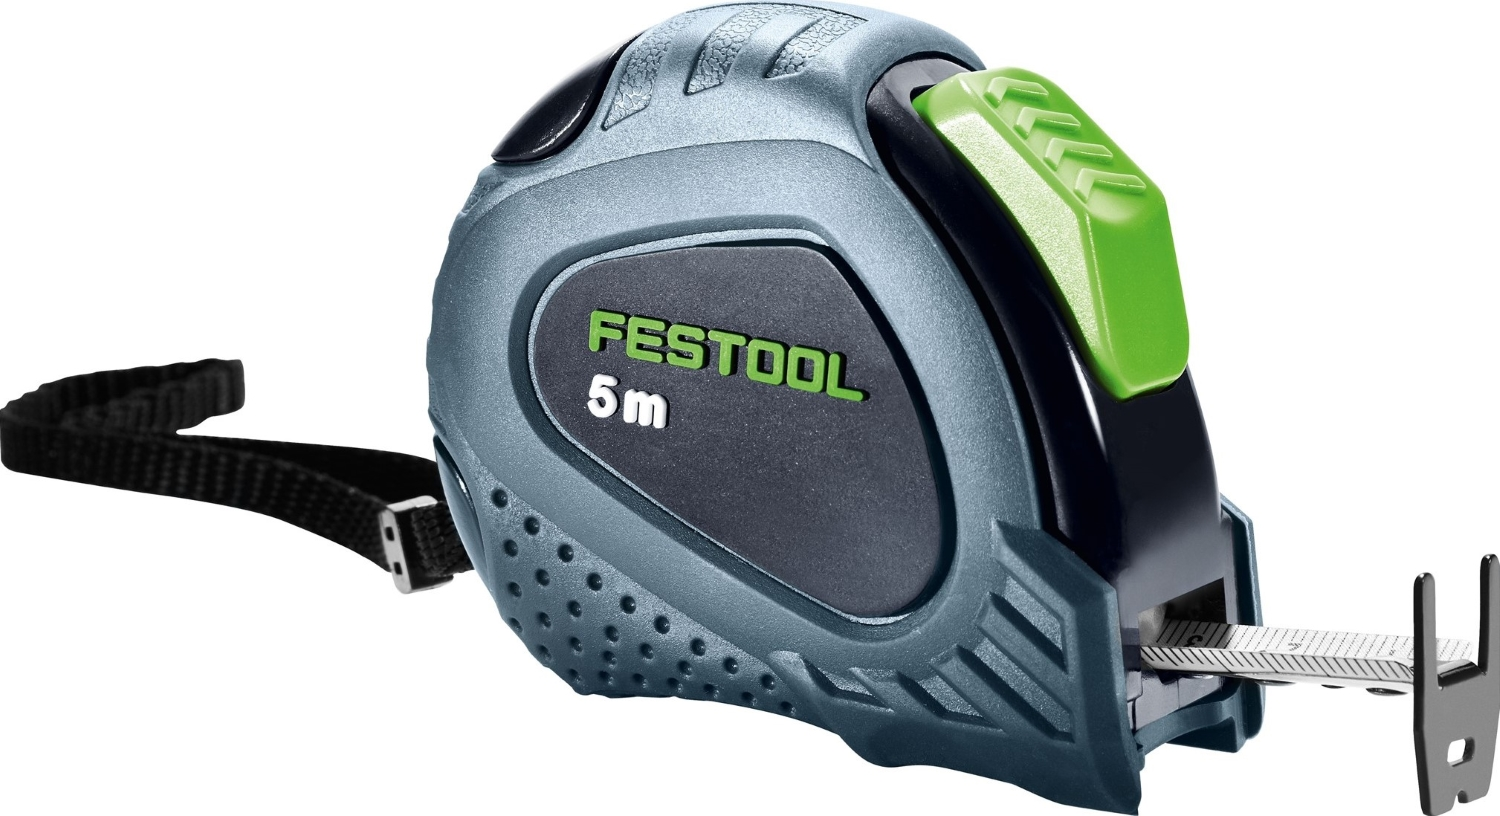 Festool MB 5m - Mètre ruban-image